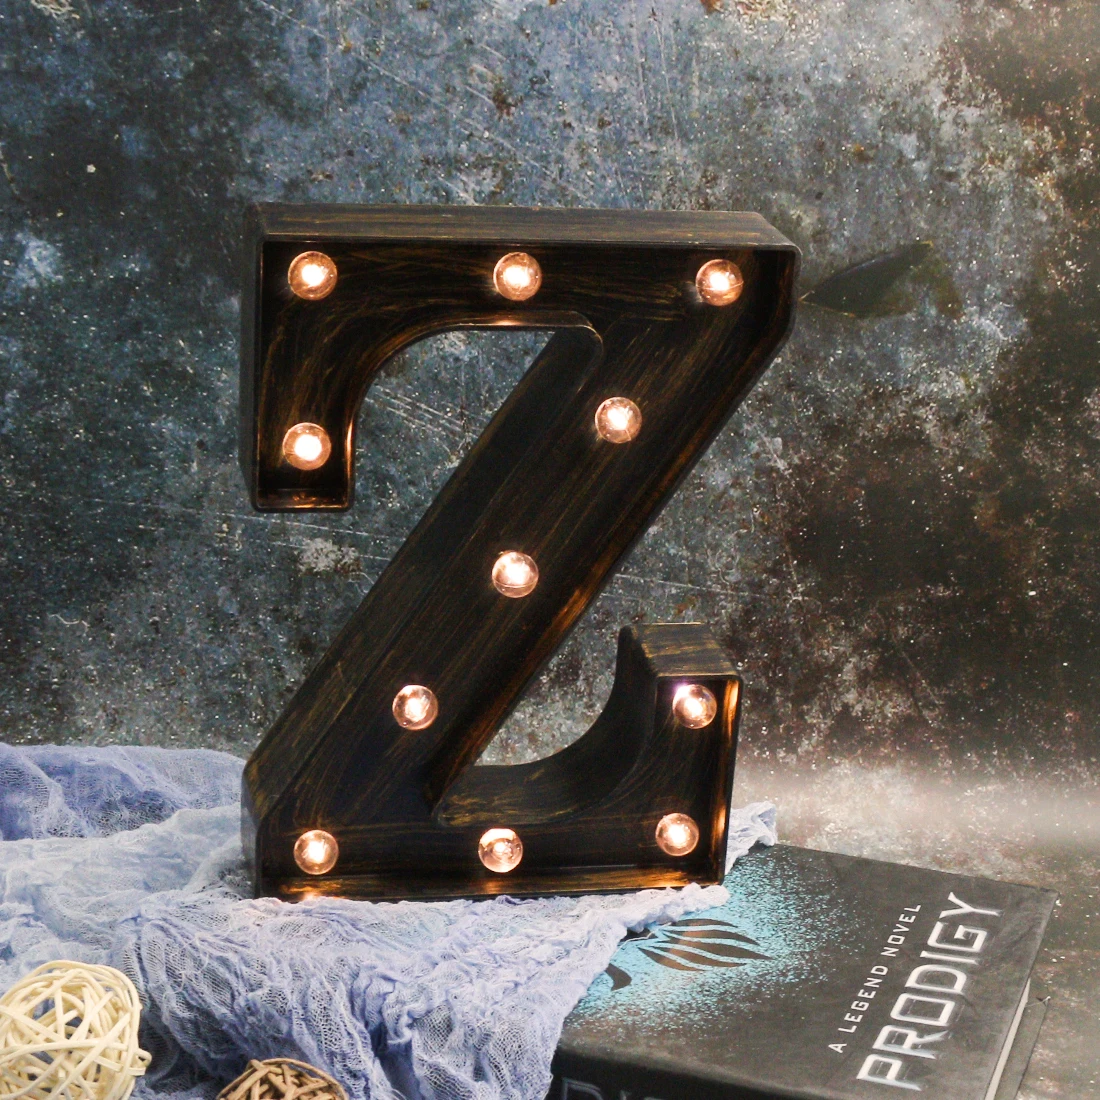 Lanpulux 3D Алфавит буквы светодиодный ночник в ретро стиле бар кофе декор Освещение светильники настенные подвесные буквы лампы